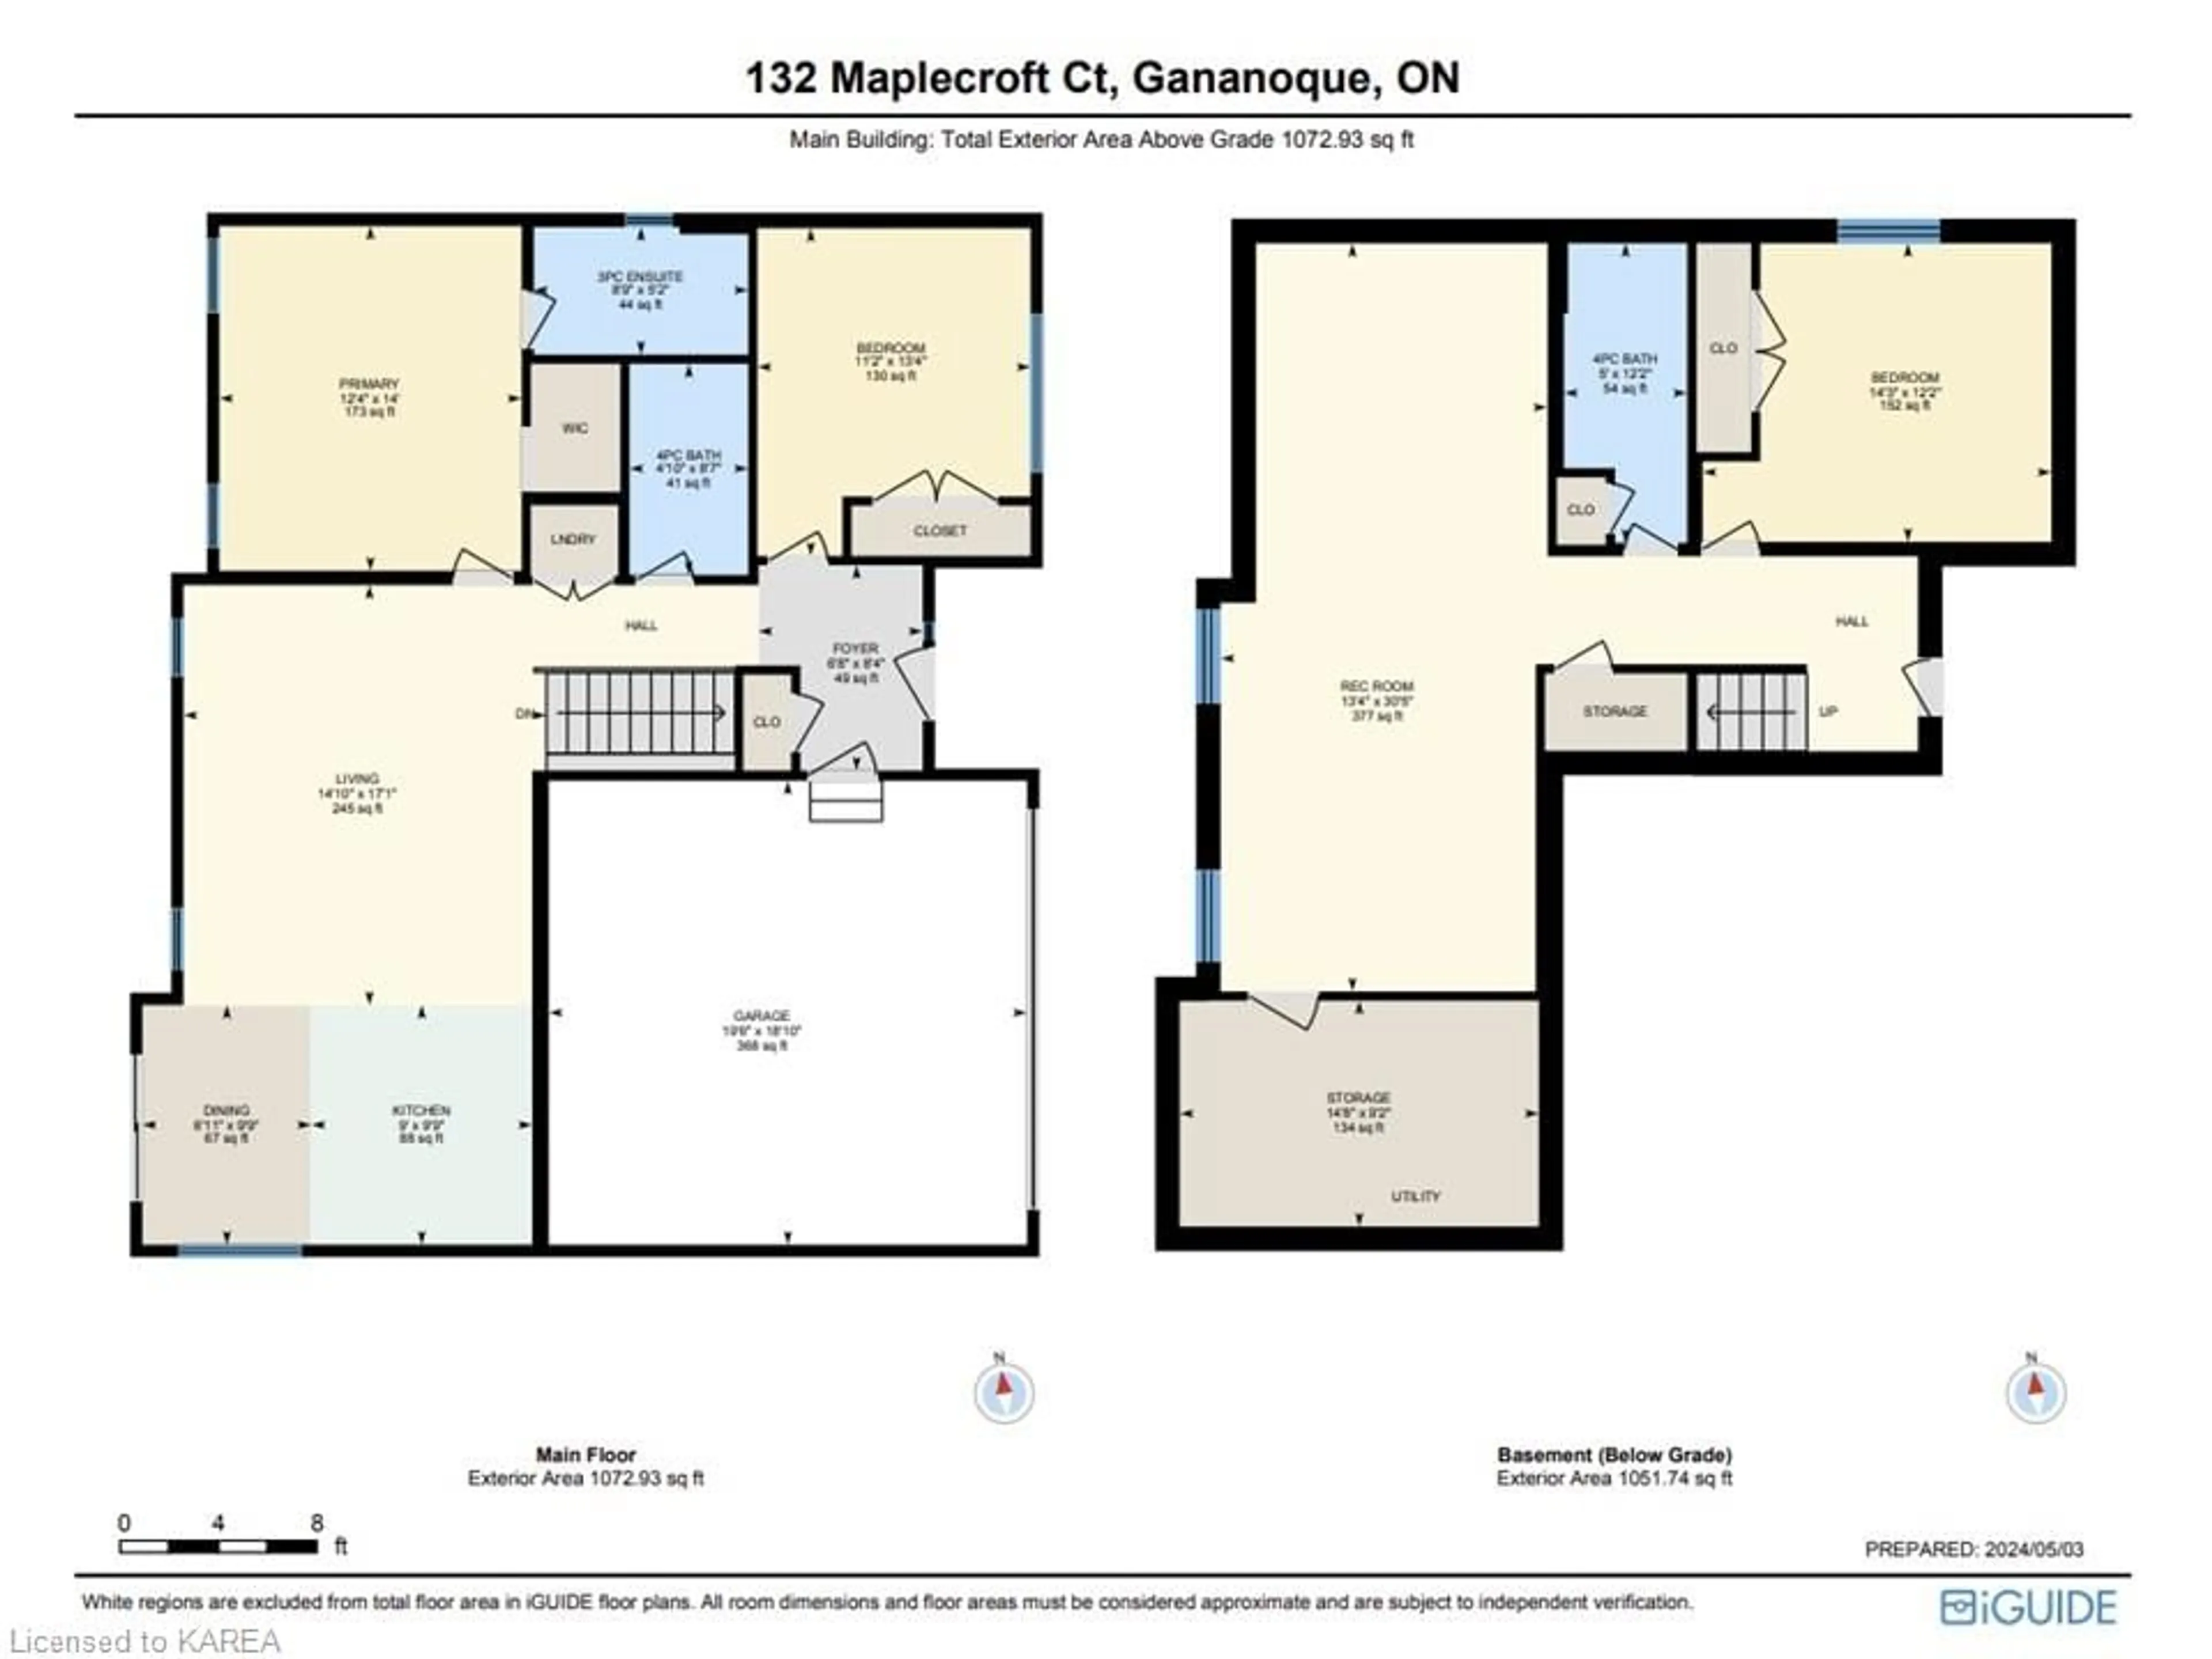 Floor plan for 132 Maplecroft Crt, Gananoque Ontario K7G 0A6